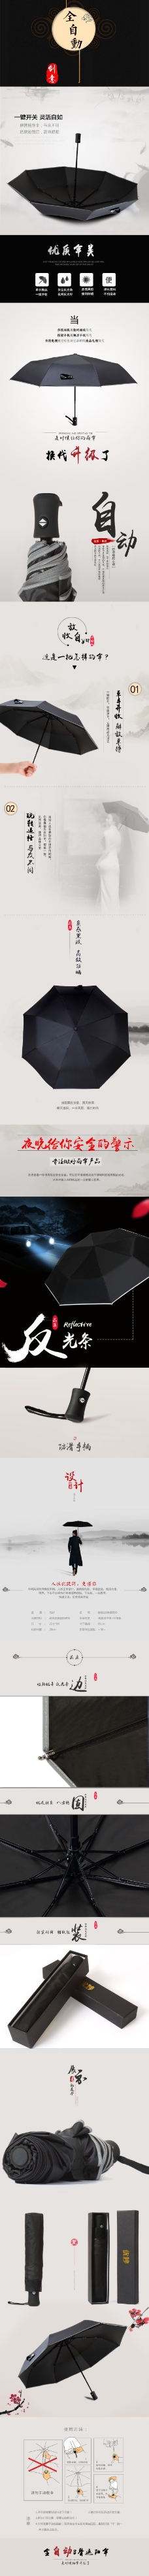 中国风情全自动雨伞详情素材下载中国风